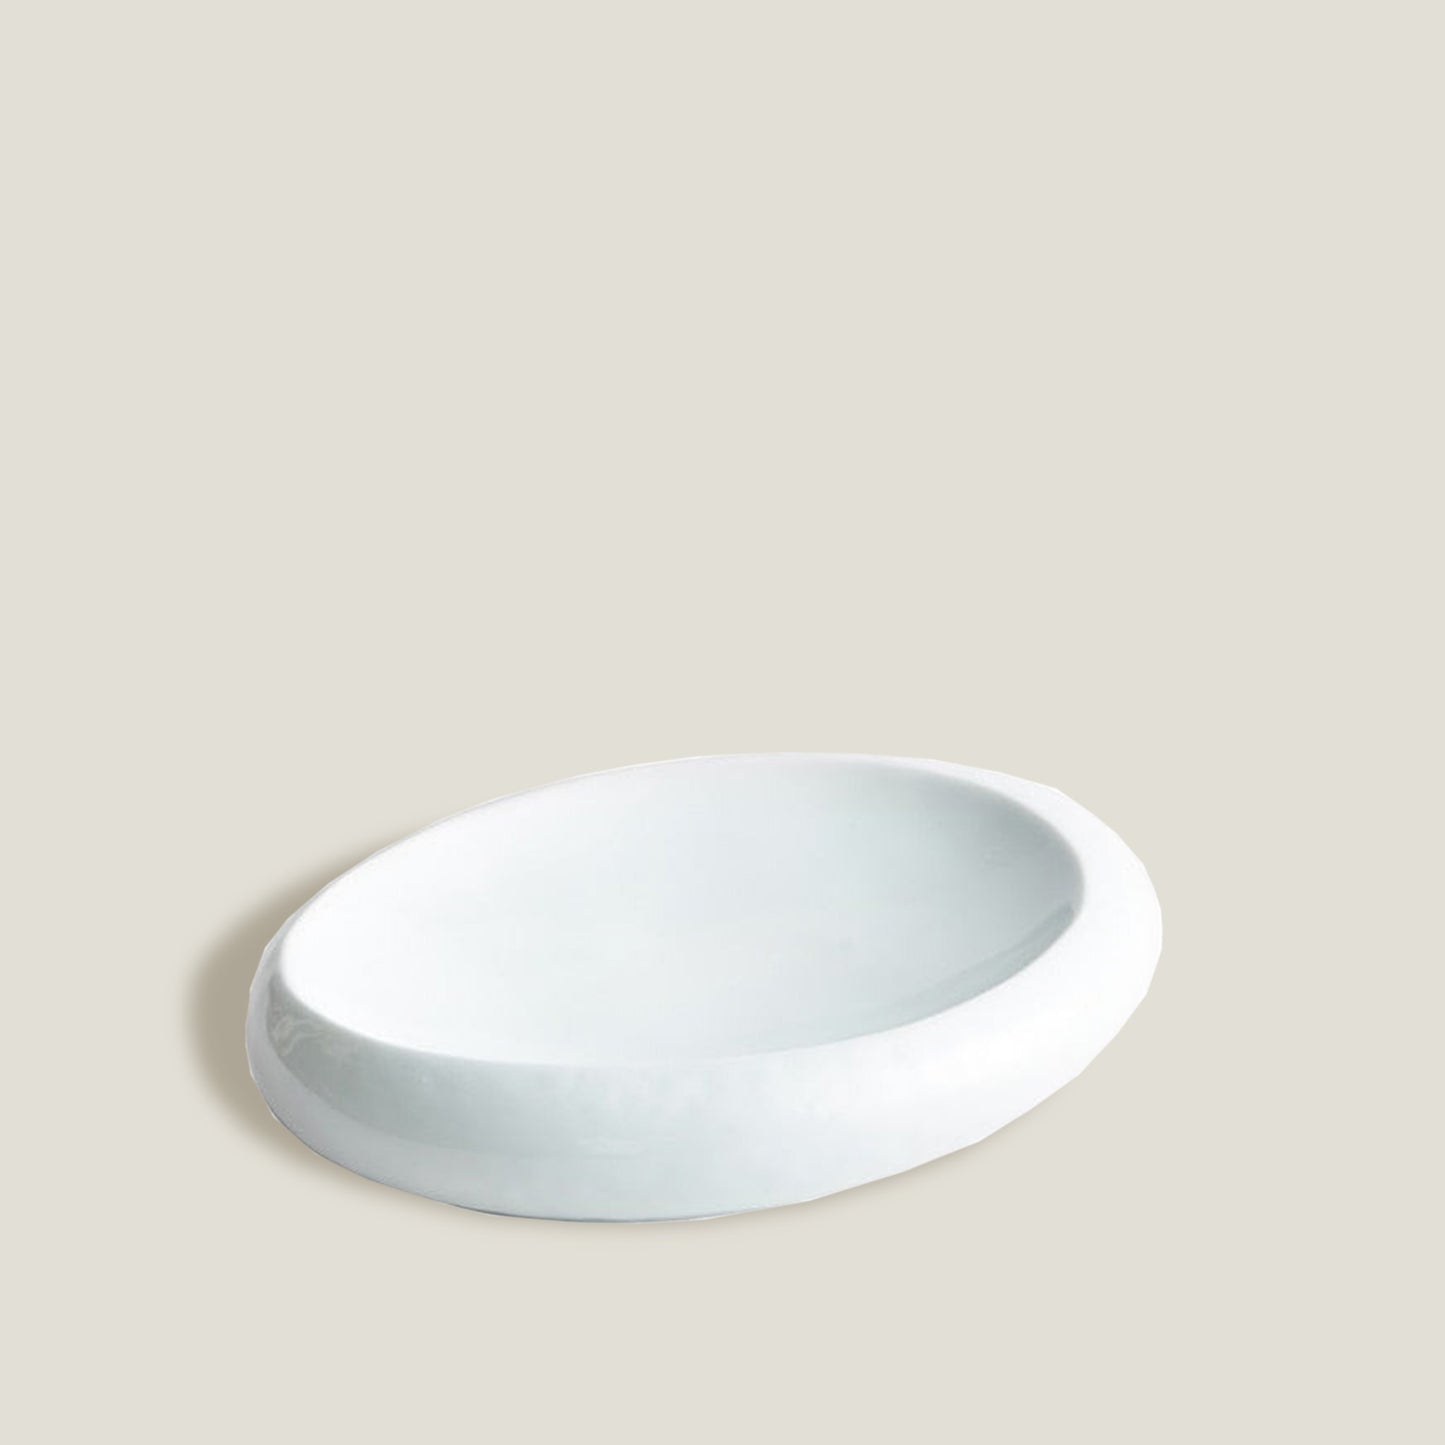 White Stone Round Plates